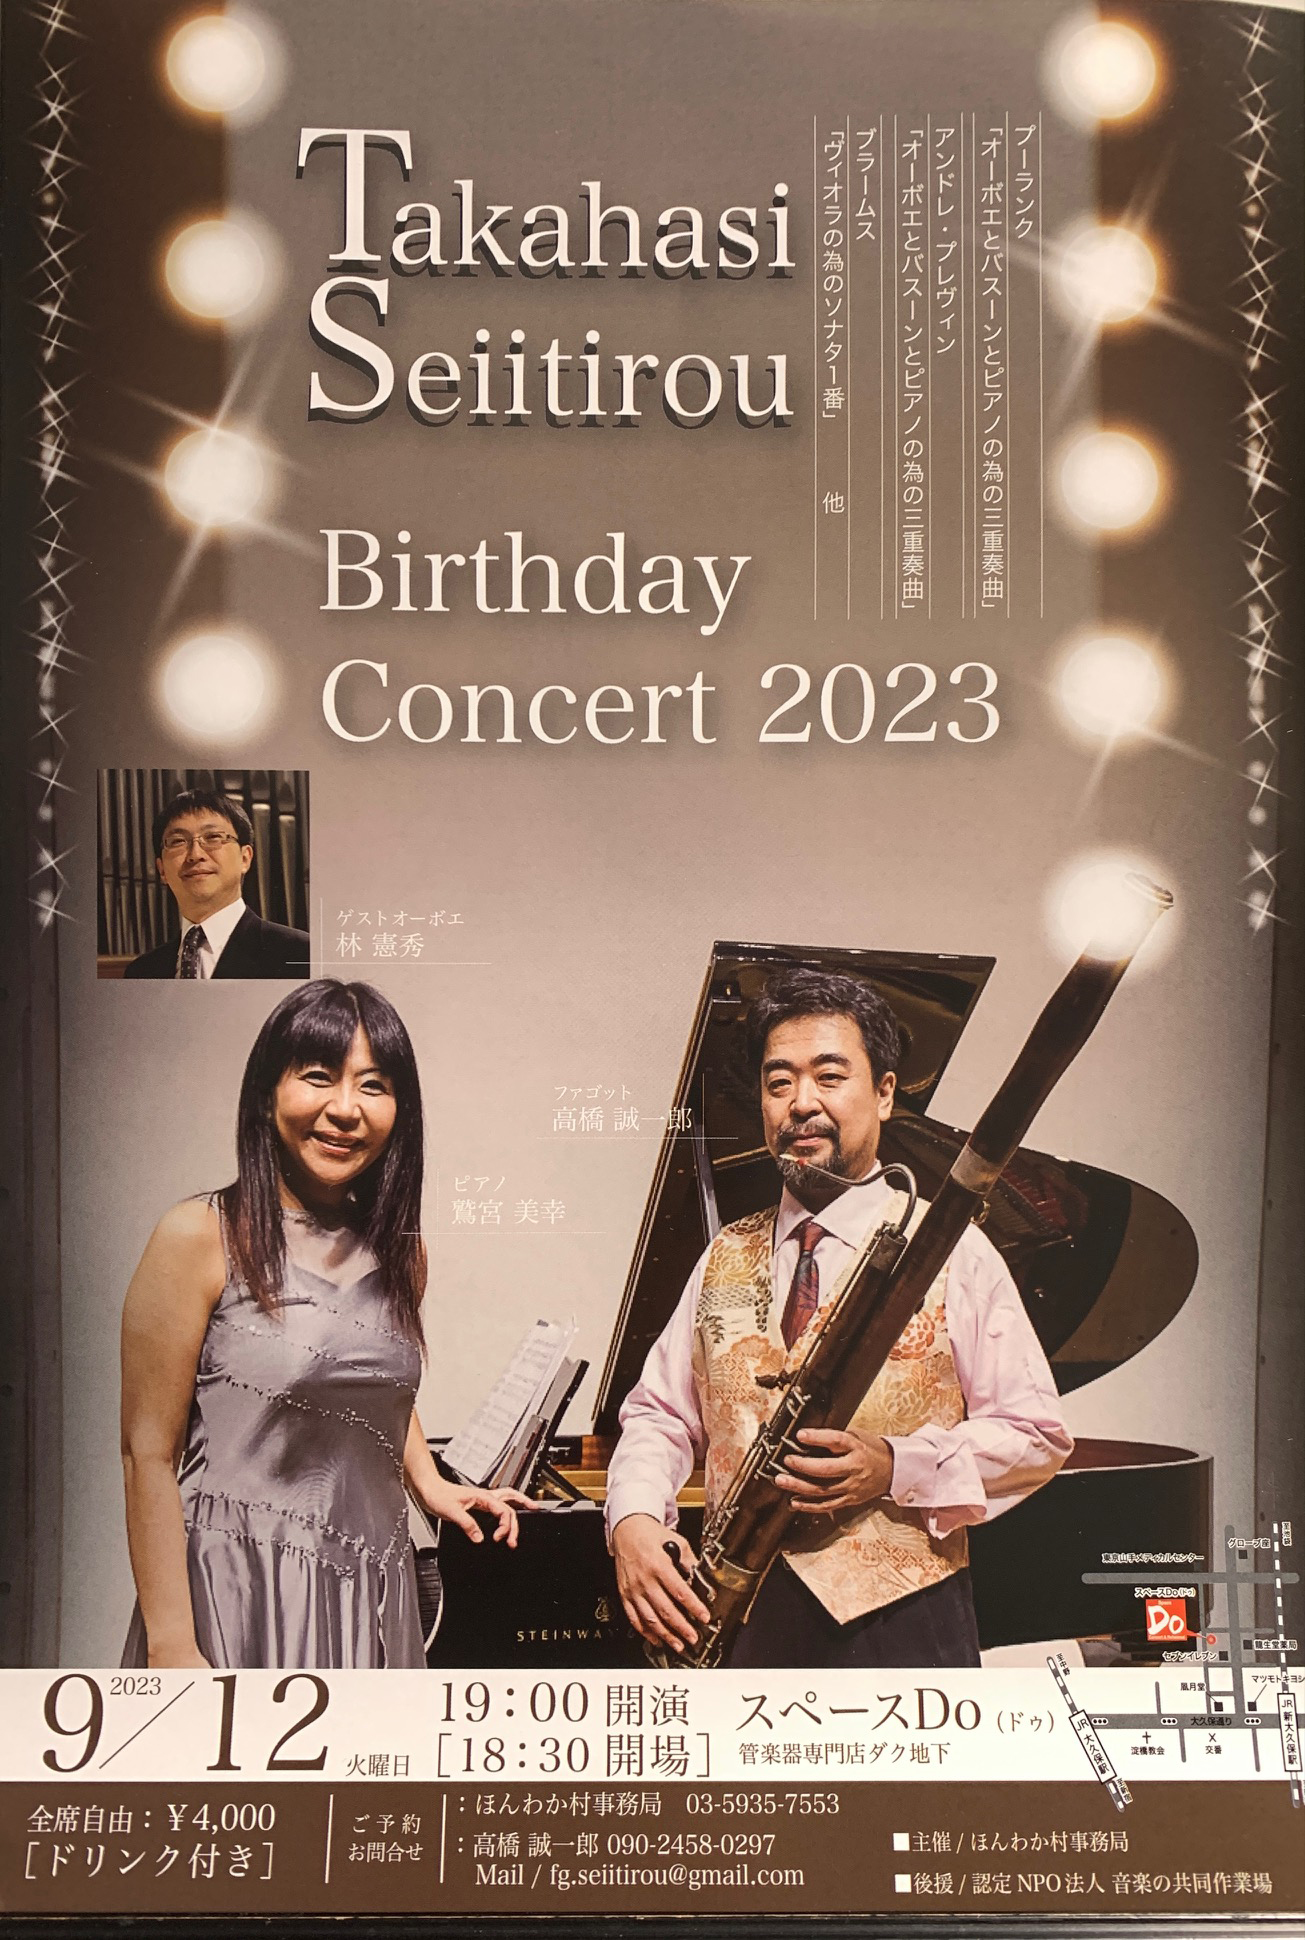 2023年9月12日「高橋誠一郎バースデーコンサート2023」のポスター